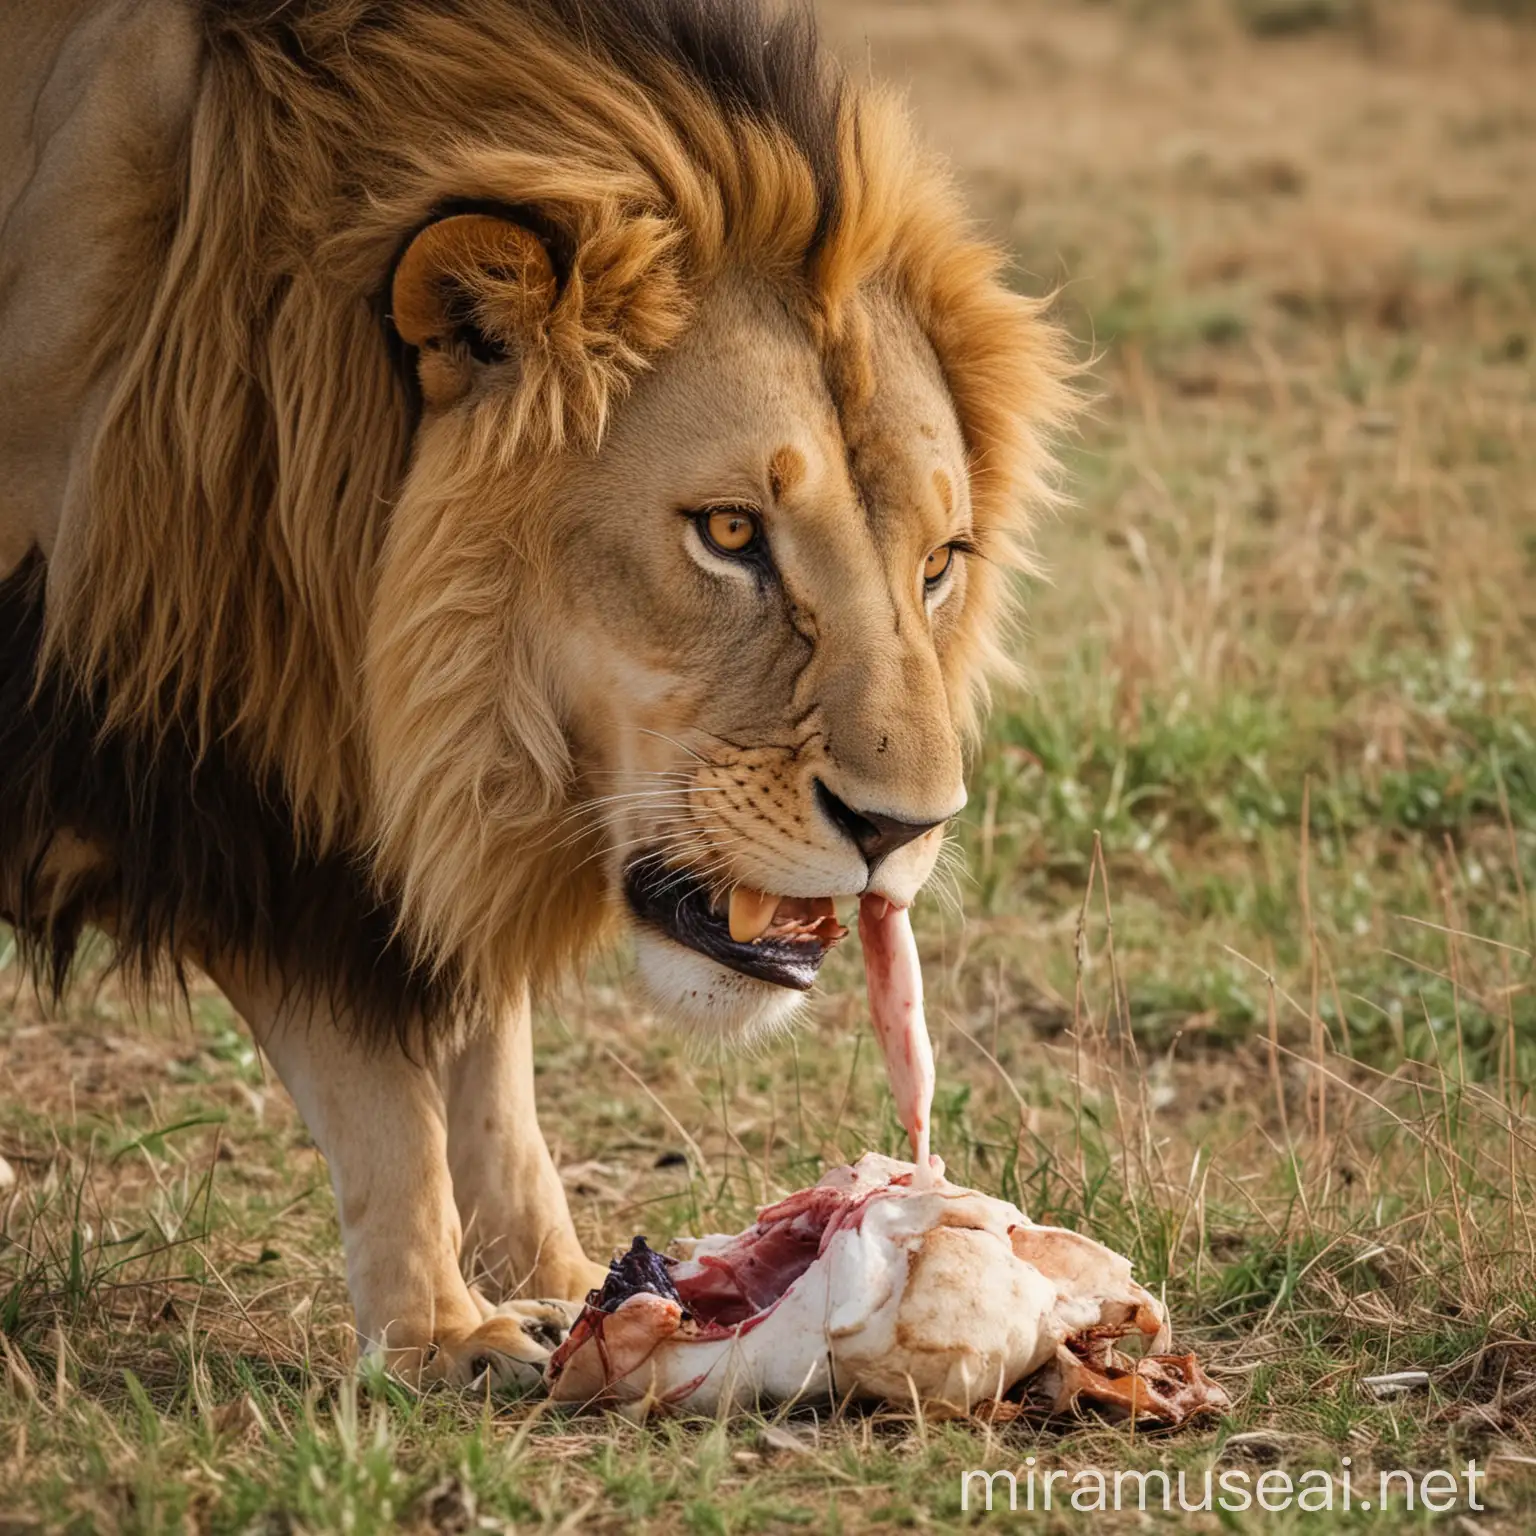 Fierce Lion Devouring Prey in African Savanna